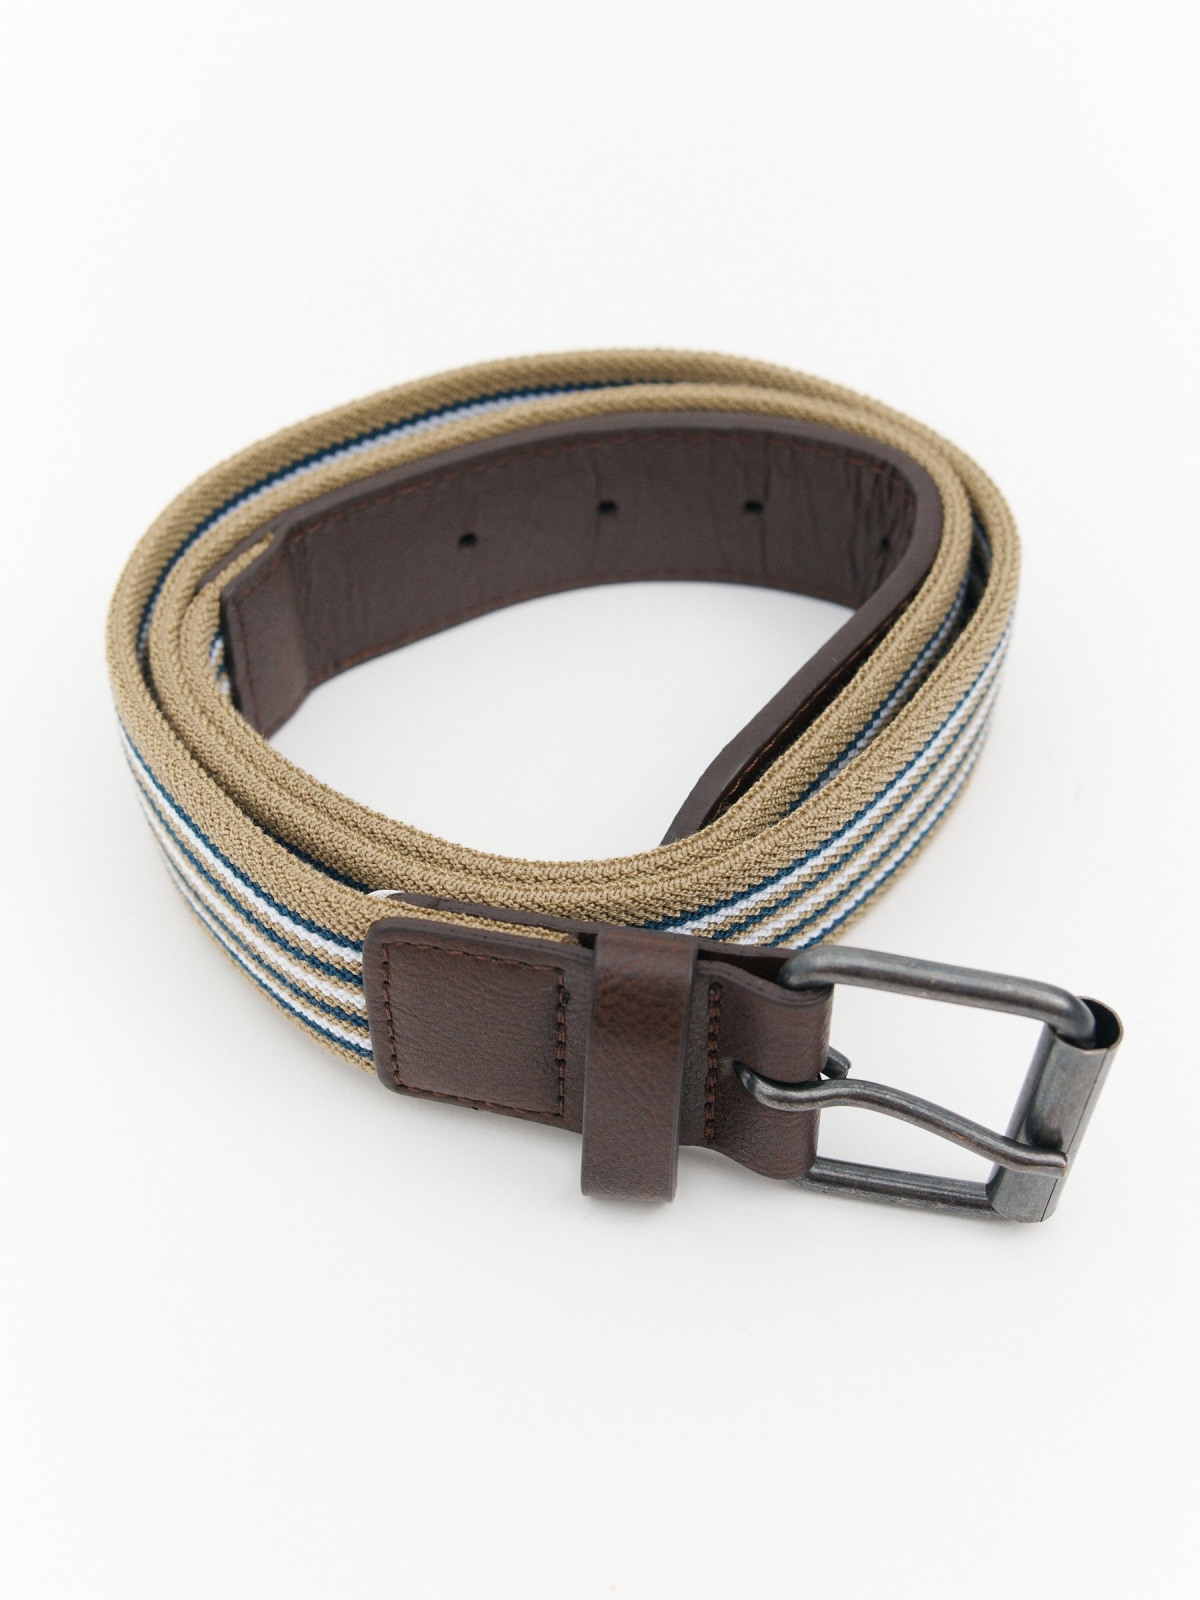 Striped elastic belt brown buckle